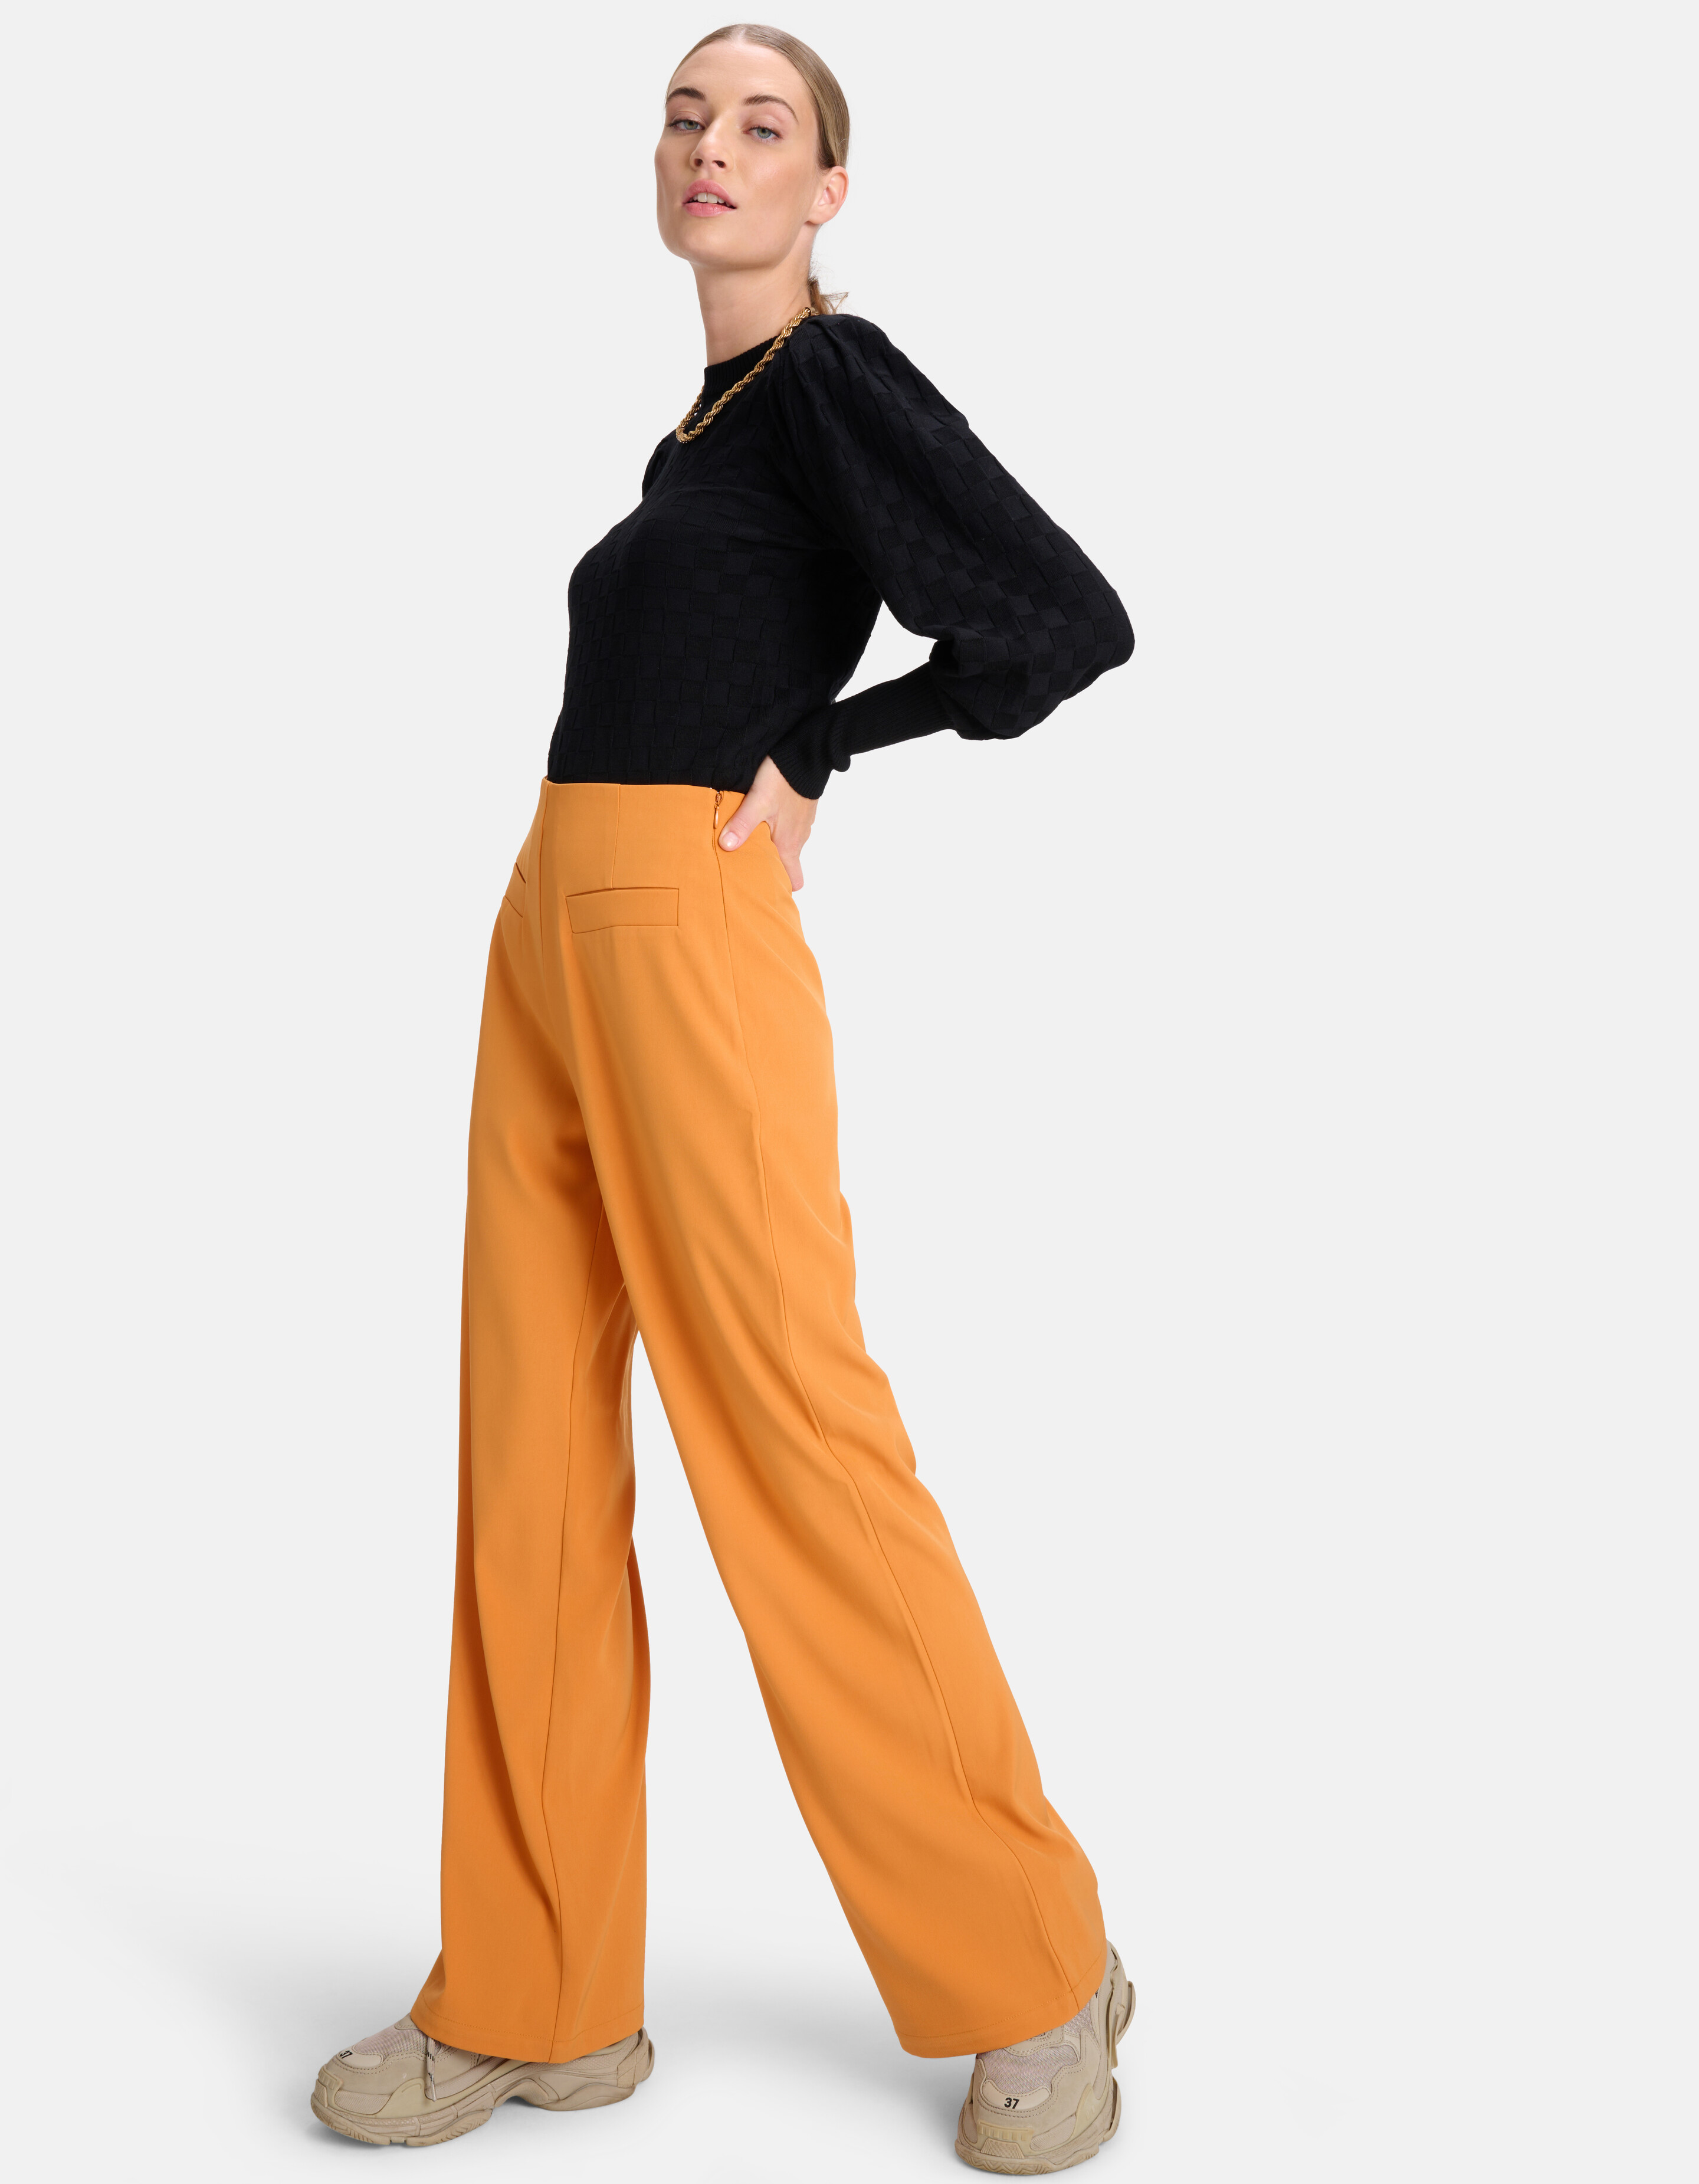 Loose Fit Pantalon Oranje By Mieke SHOEBY WOMEN